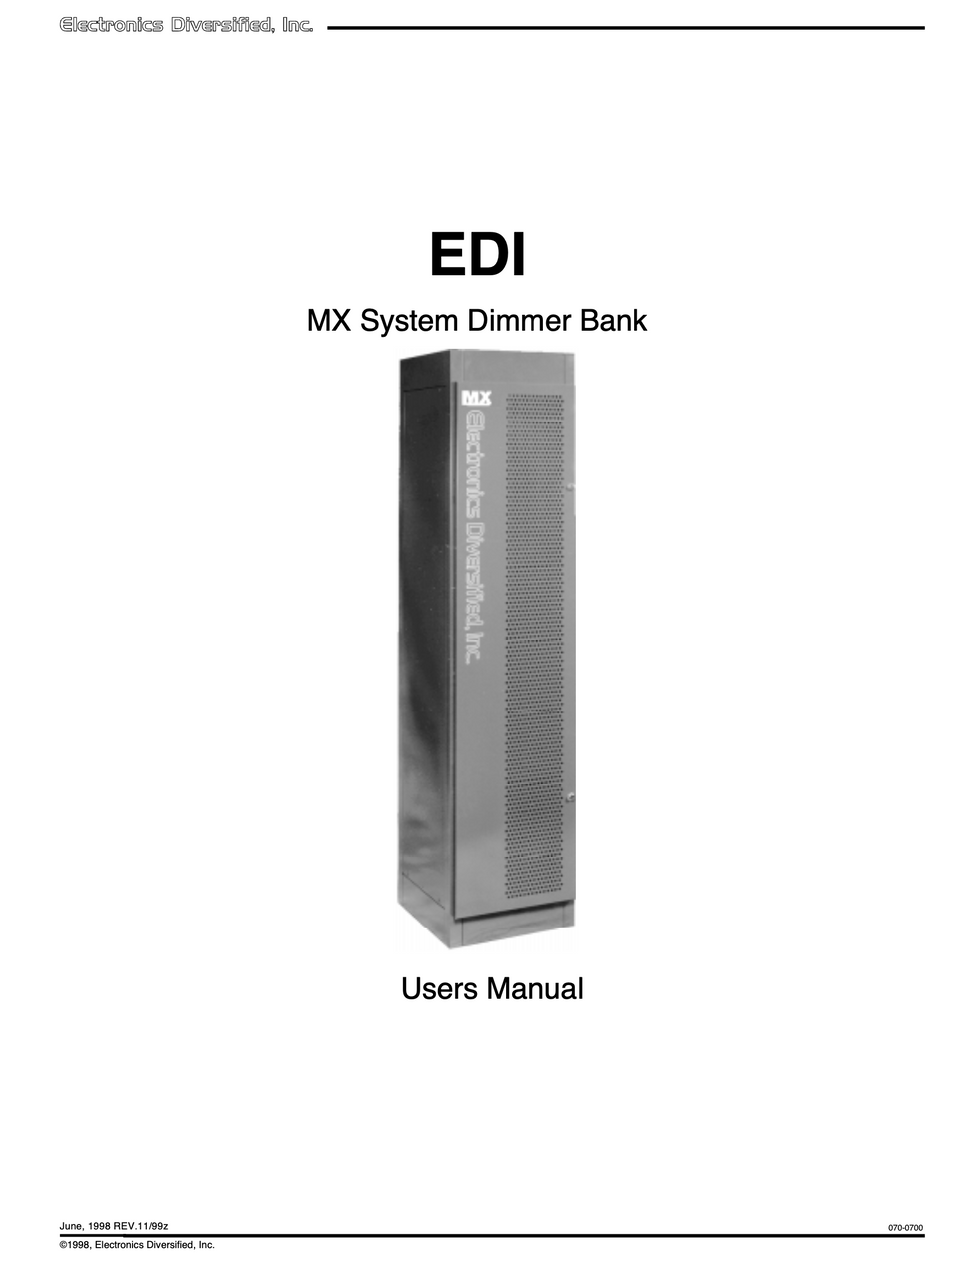 EDI MX Rack User Manual